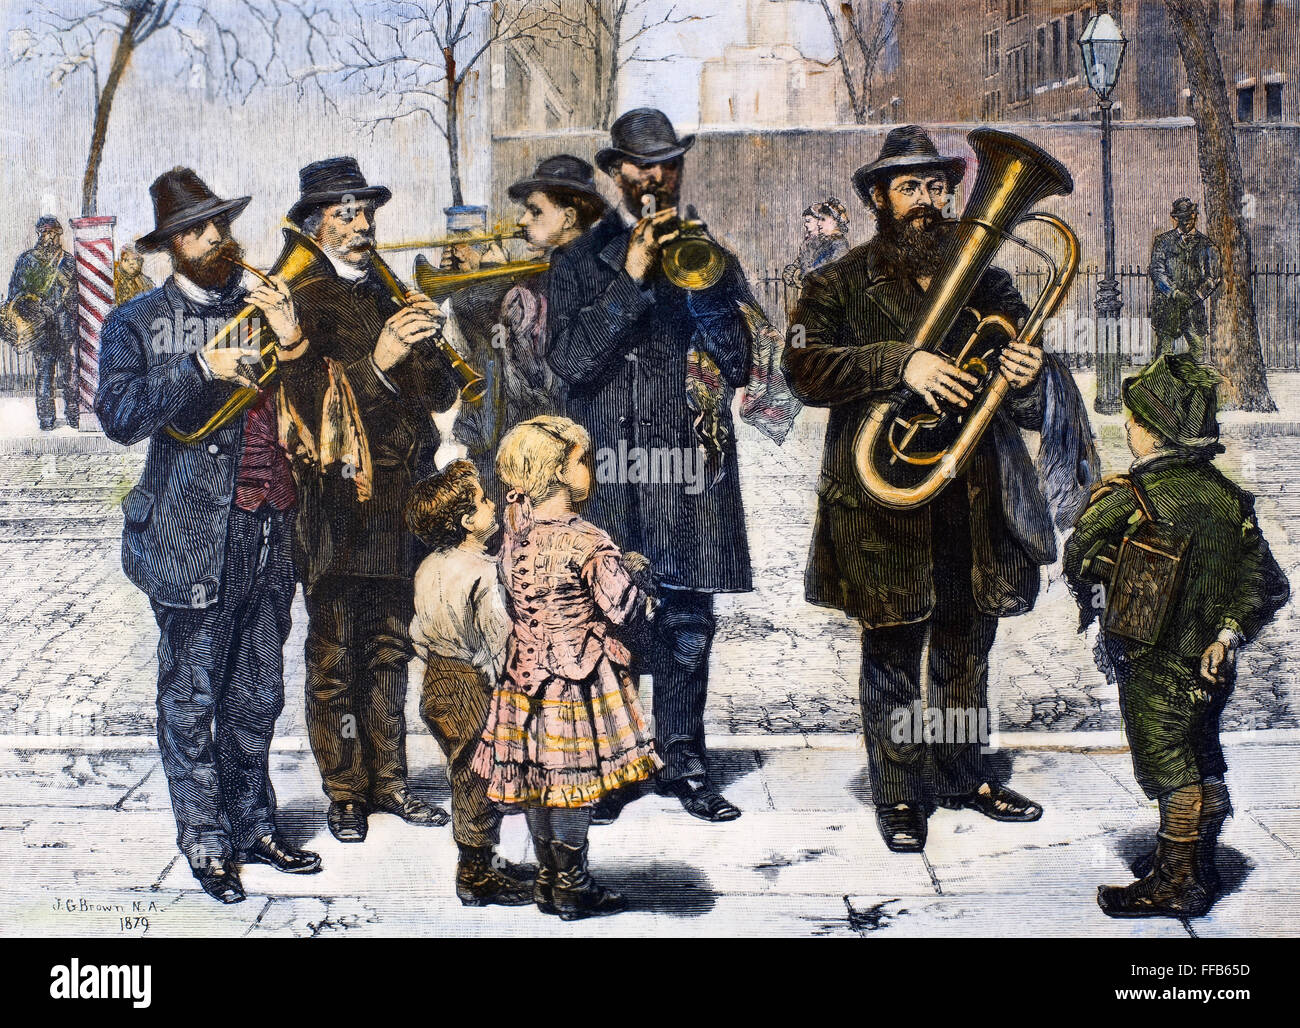 GERMAN STREET BAND, 1879. NUM Deutsch Street Band Durchführung in New York City. Holz, Gravur, amerikanisch, 1879, nach einem Gemälde von John George Brown. Stockfoto